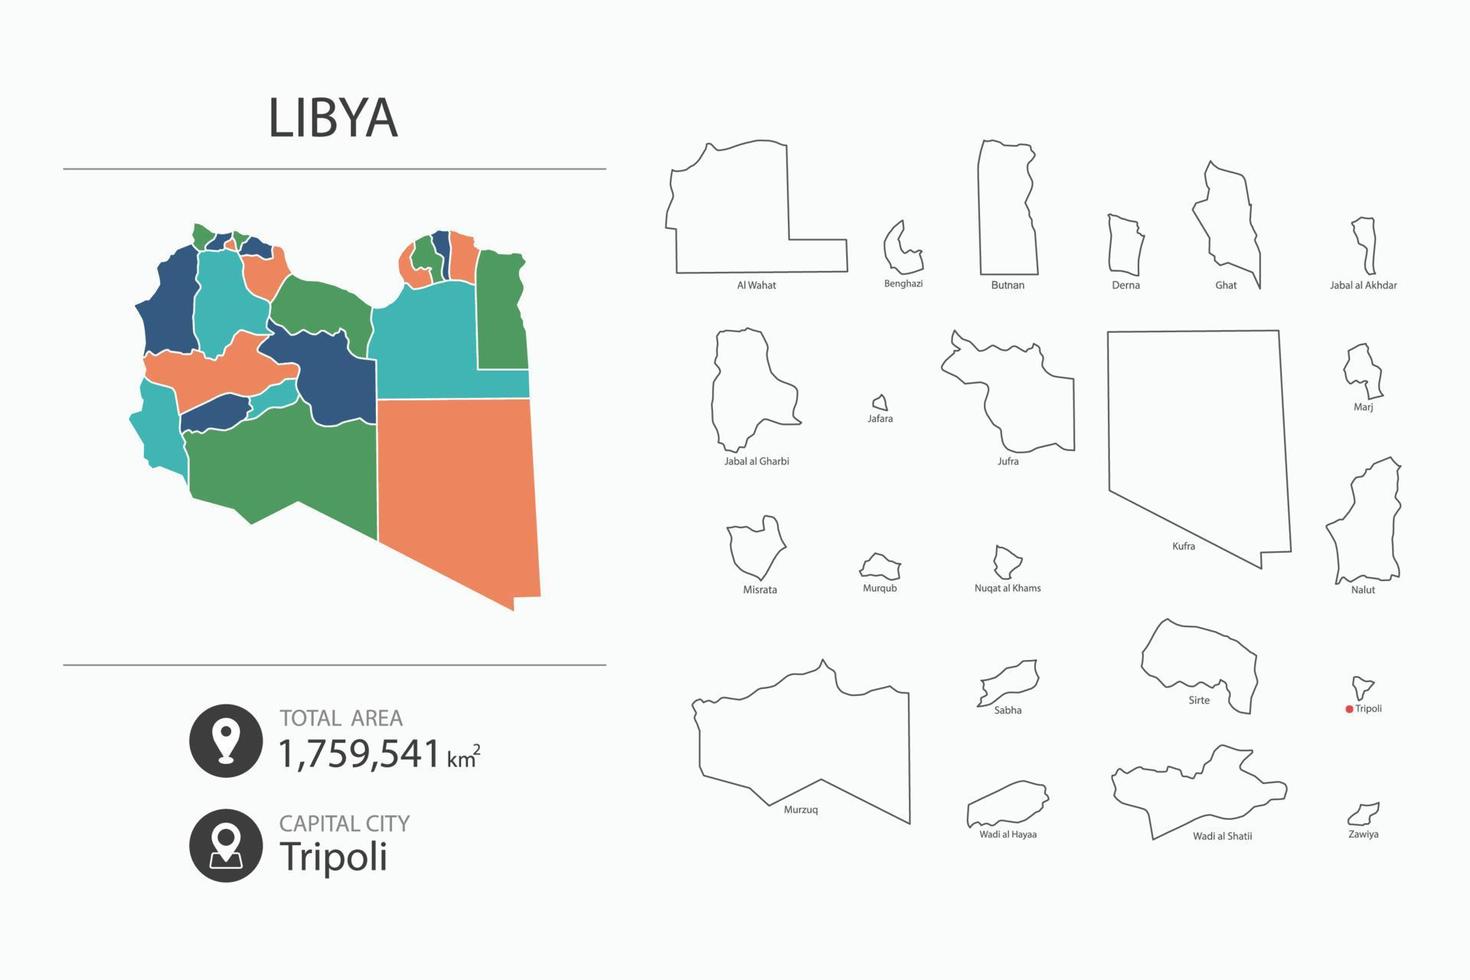 mapa da líbia com mapa detalhado do país. elementos do mapa das cidades, áreas totais e capital. vetor